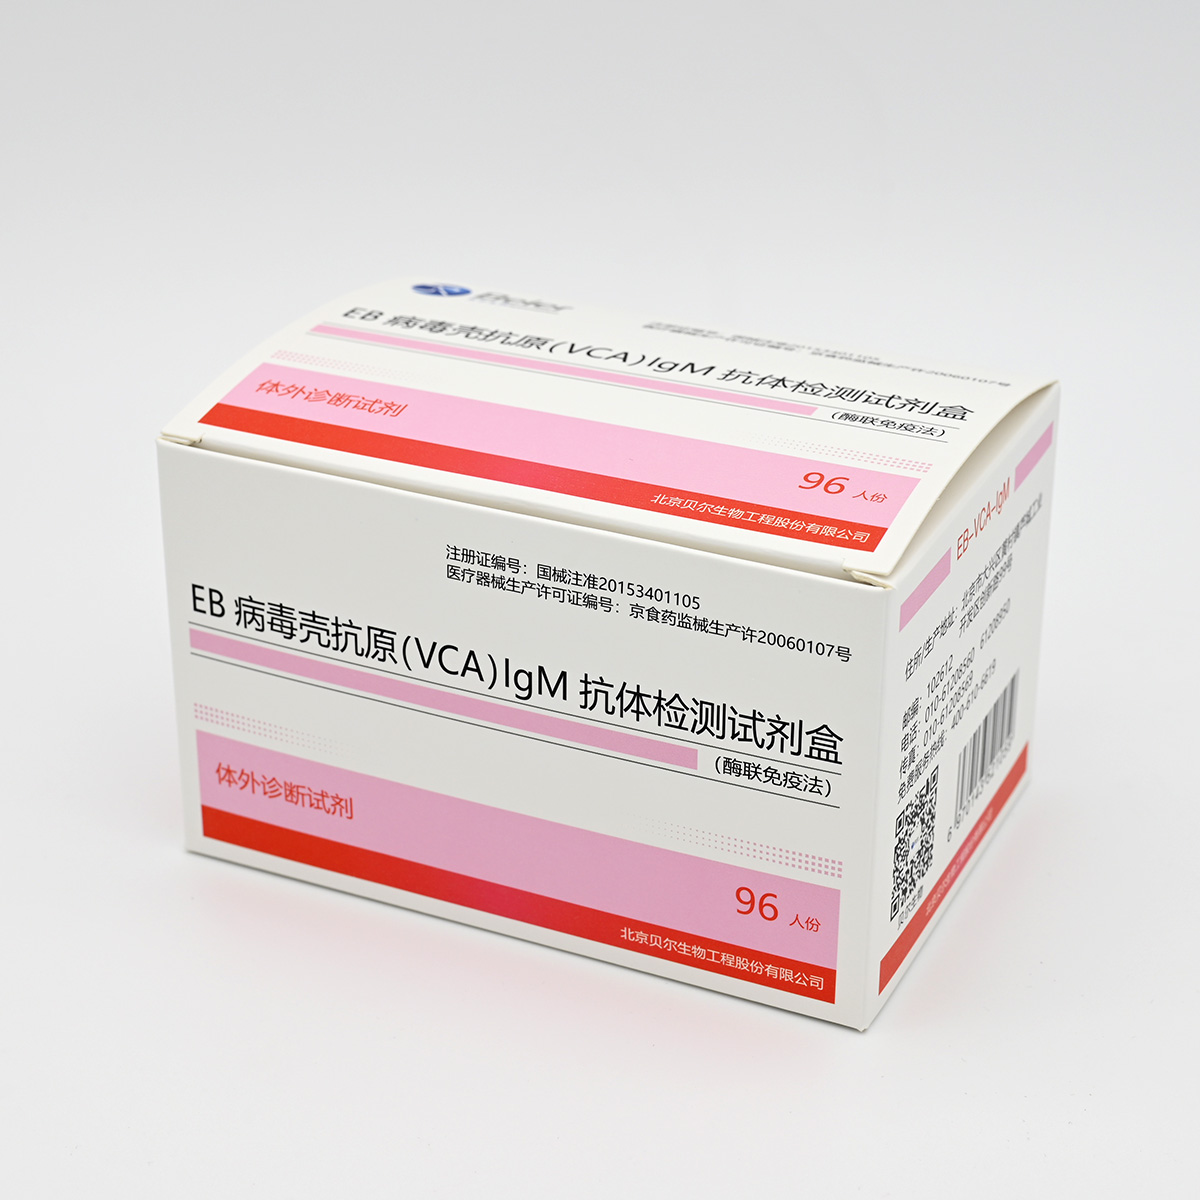 【贝尔】EB病毒壳抗原(VCA)IgM抗体检测试剂盒(酶联免疫法)